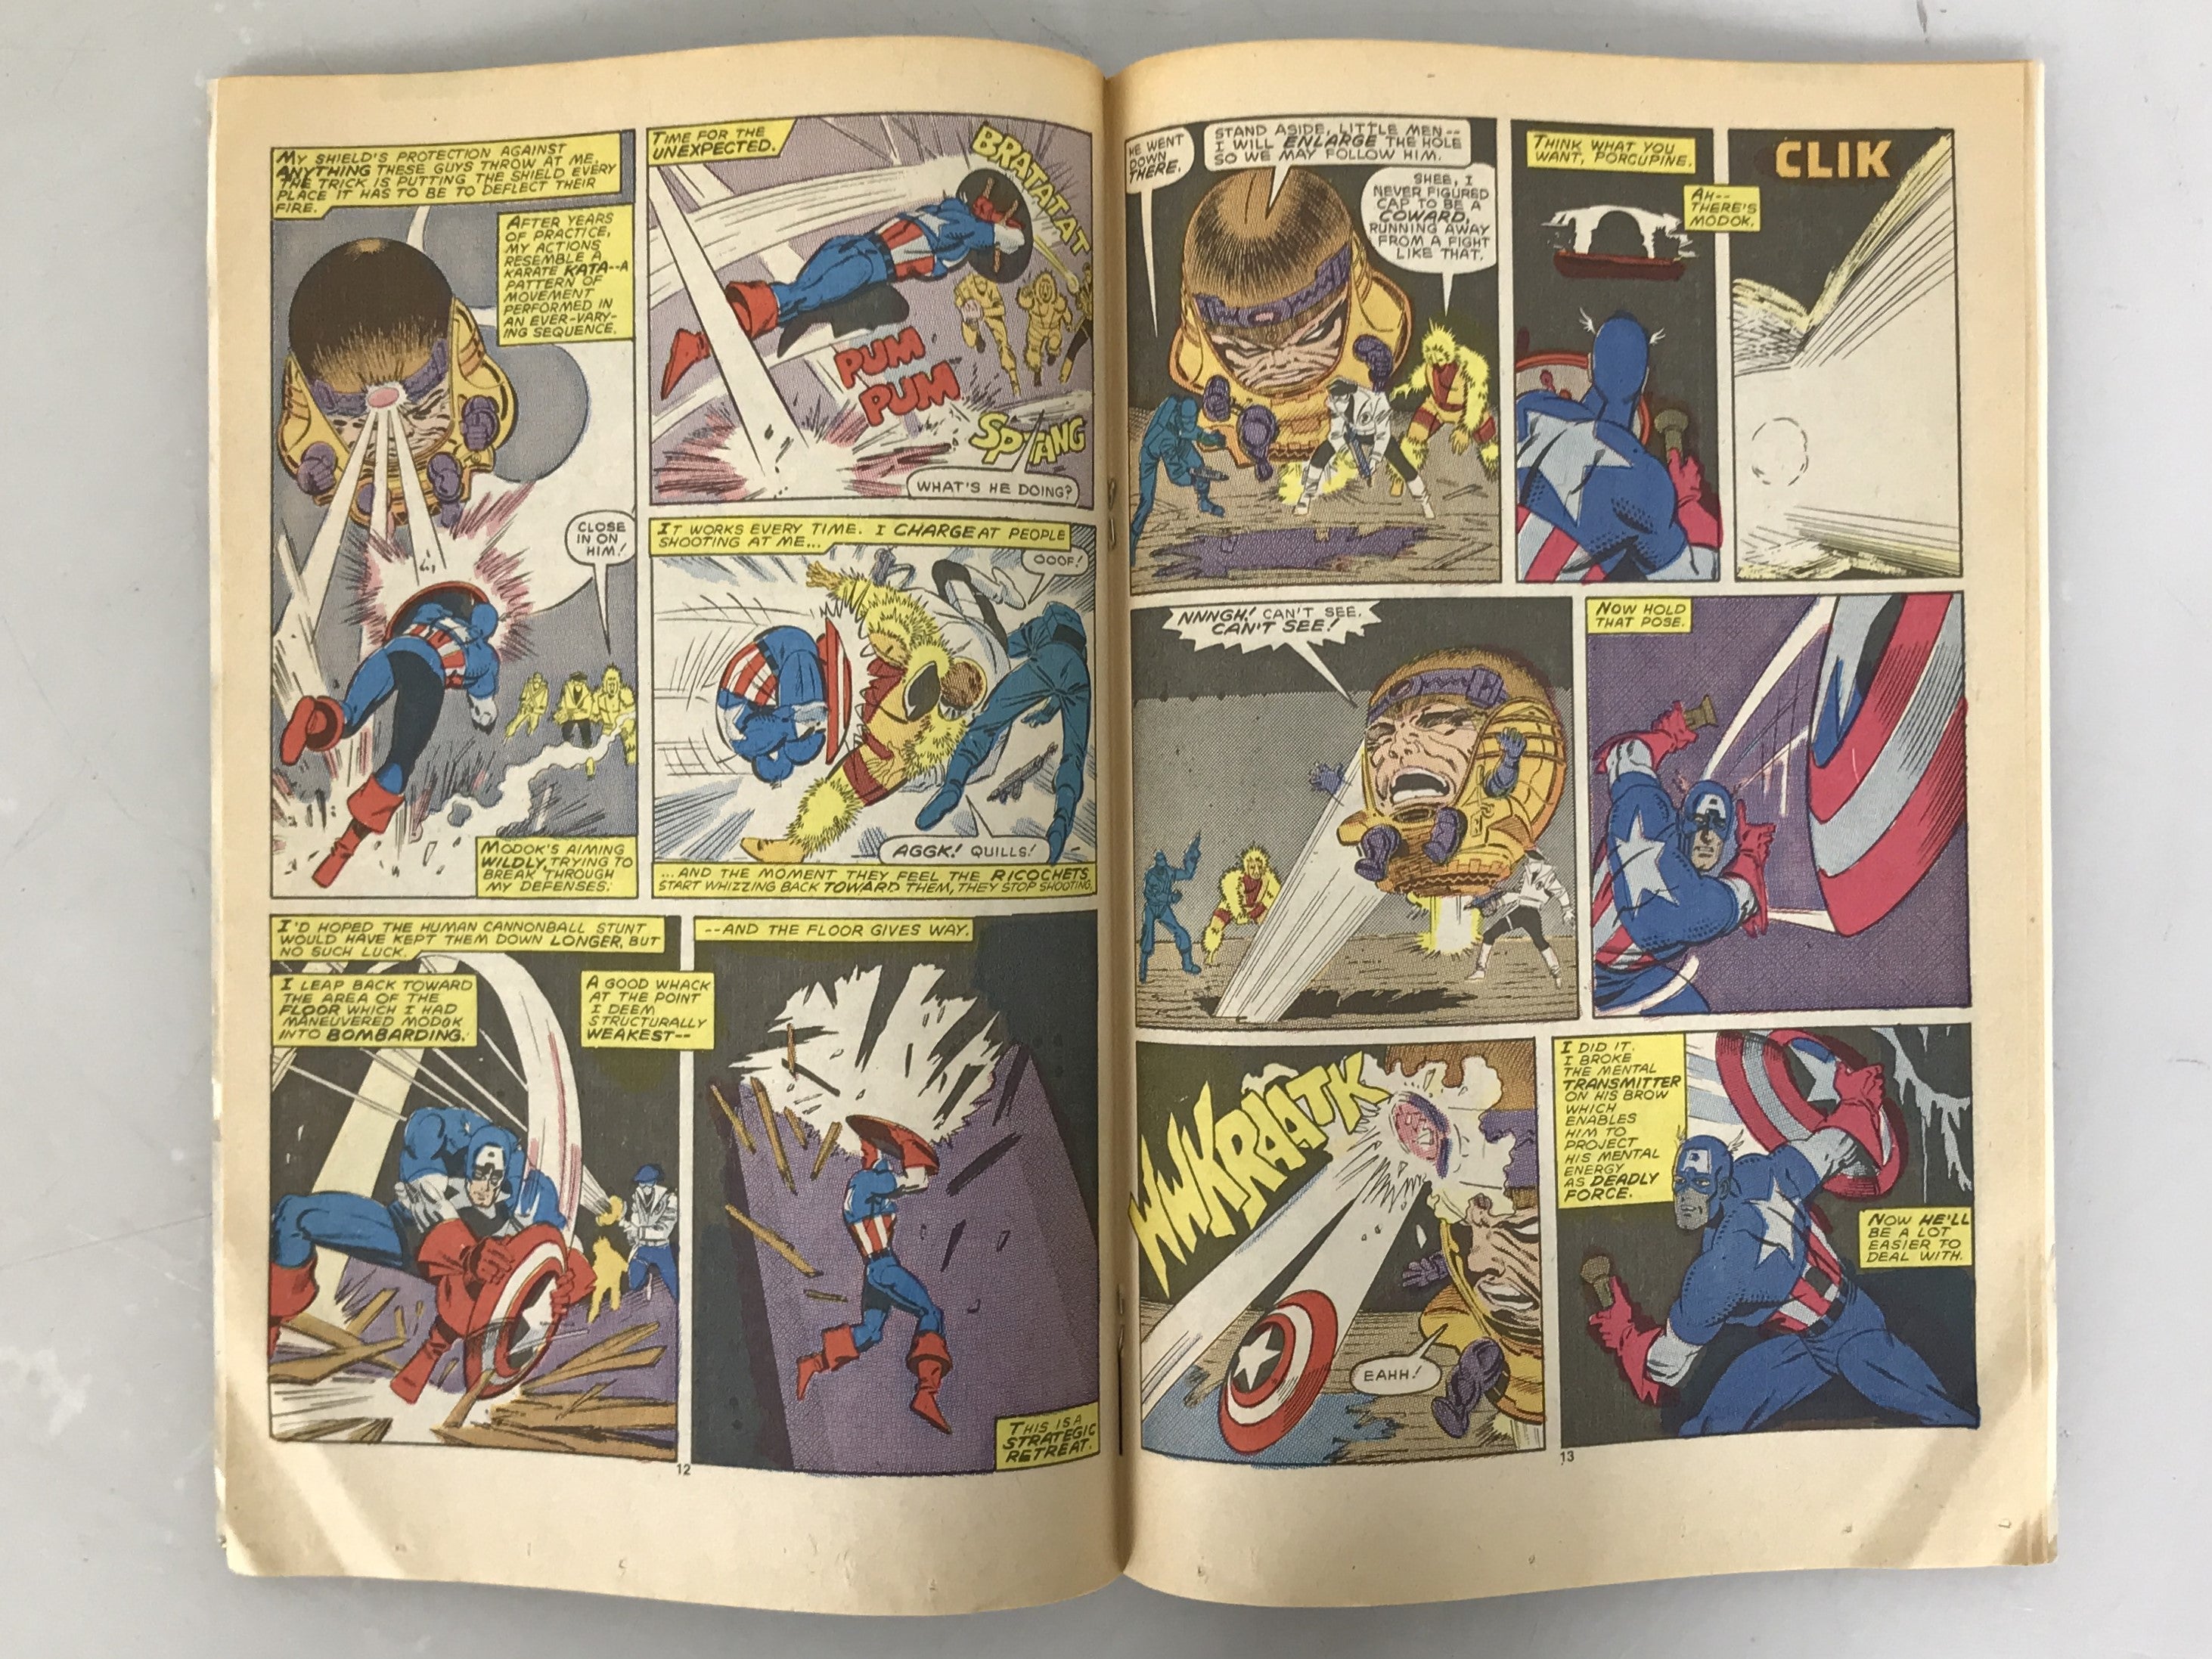 Captain America 326 1987